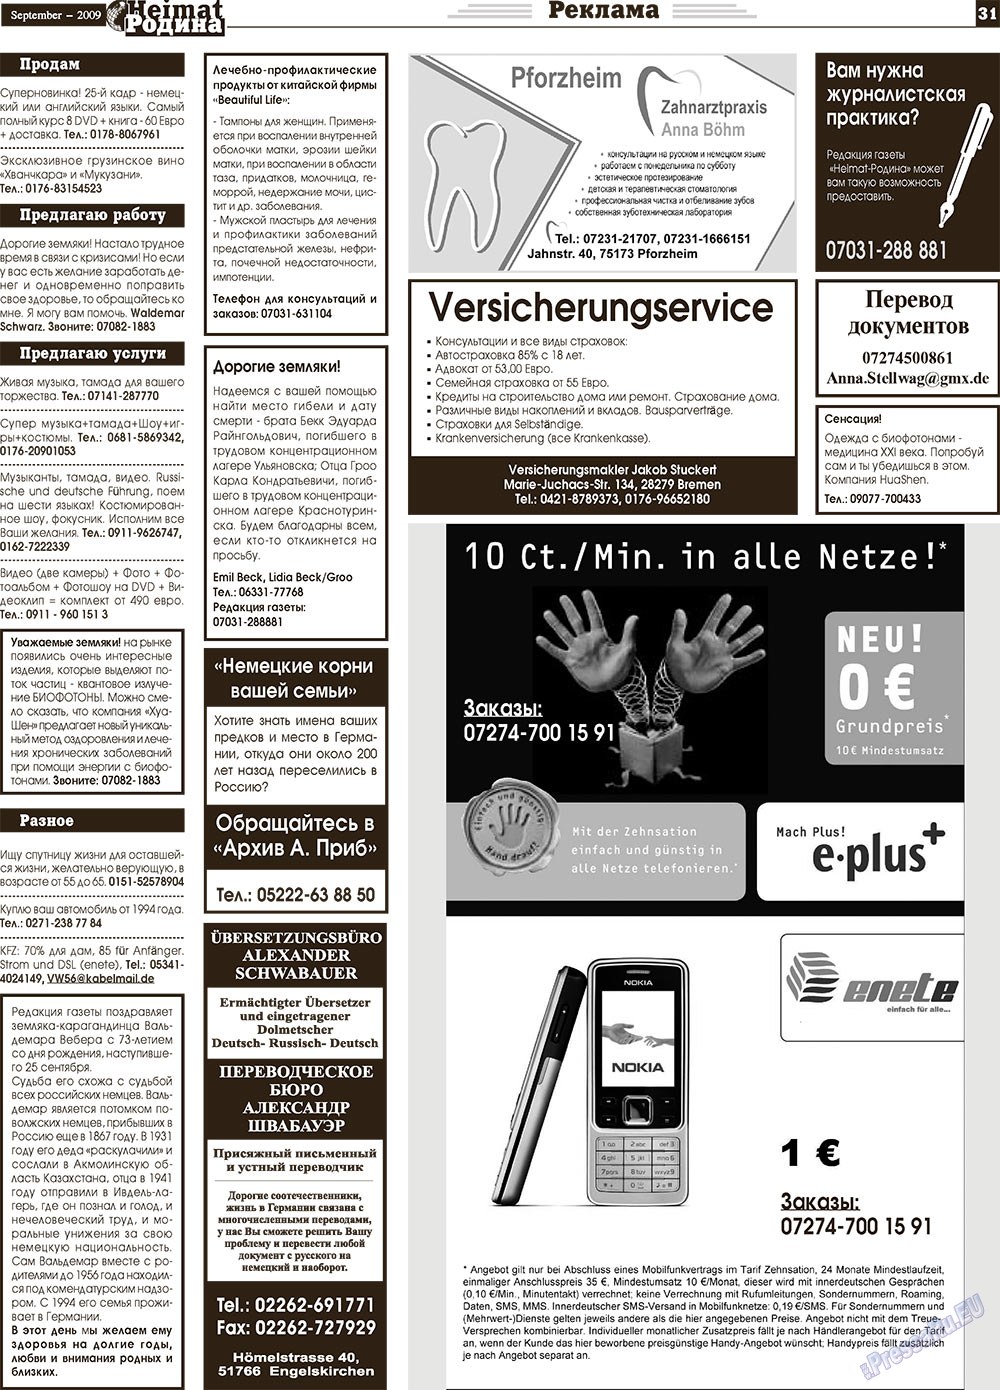 Heimat-Родина (газета). 2009 год, номер 9, стр. 31